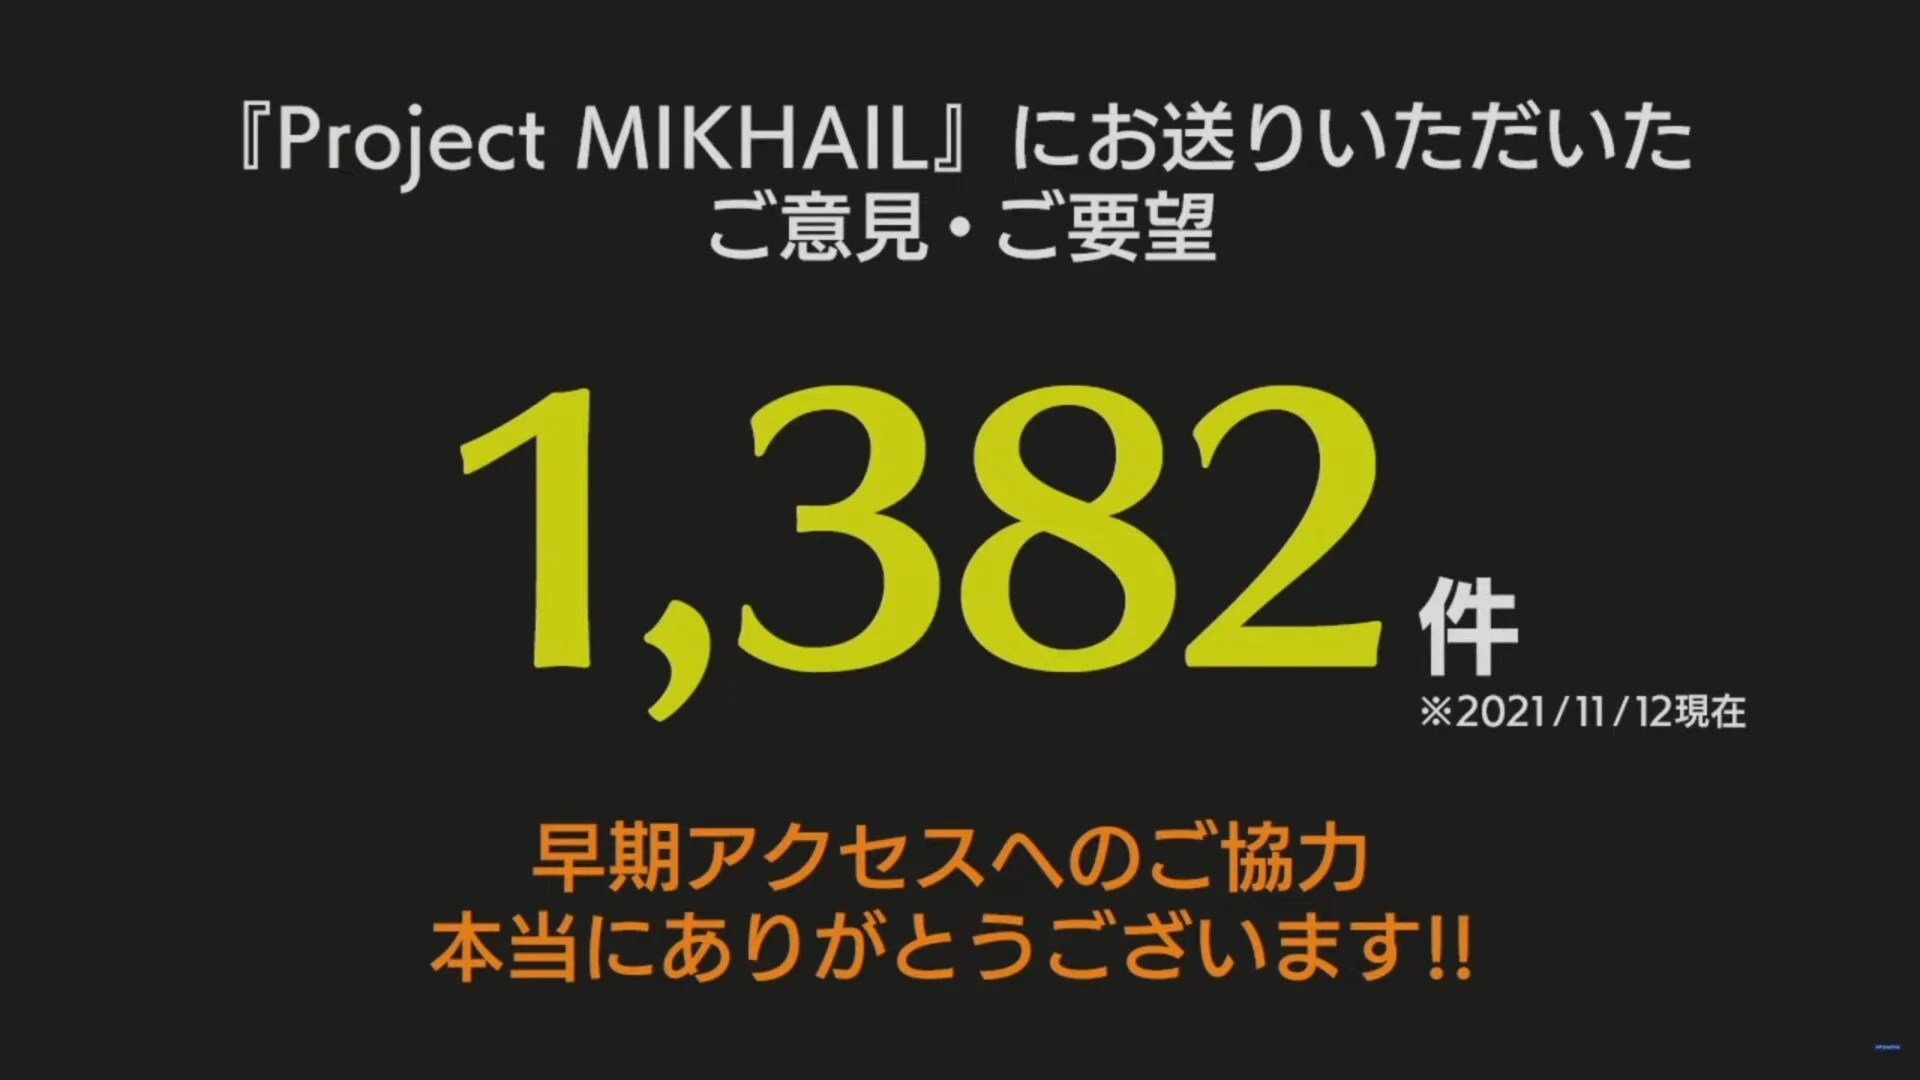 Projek Mikhail 1 2